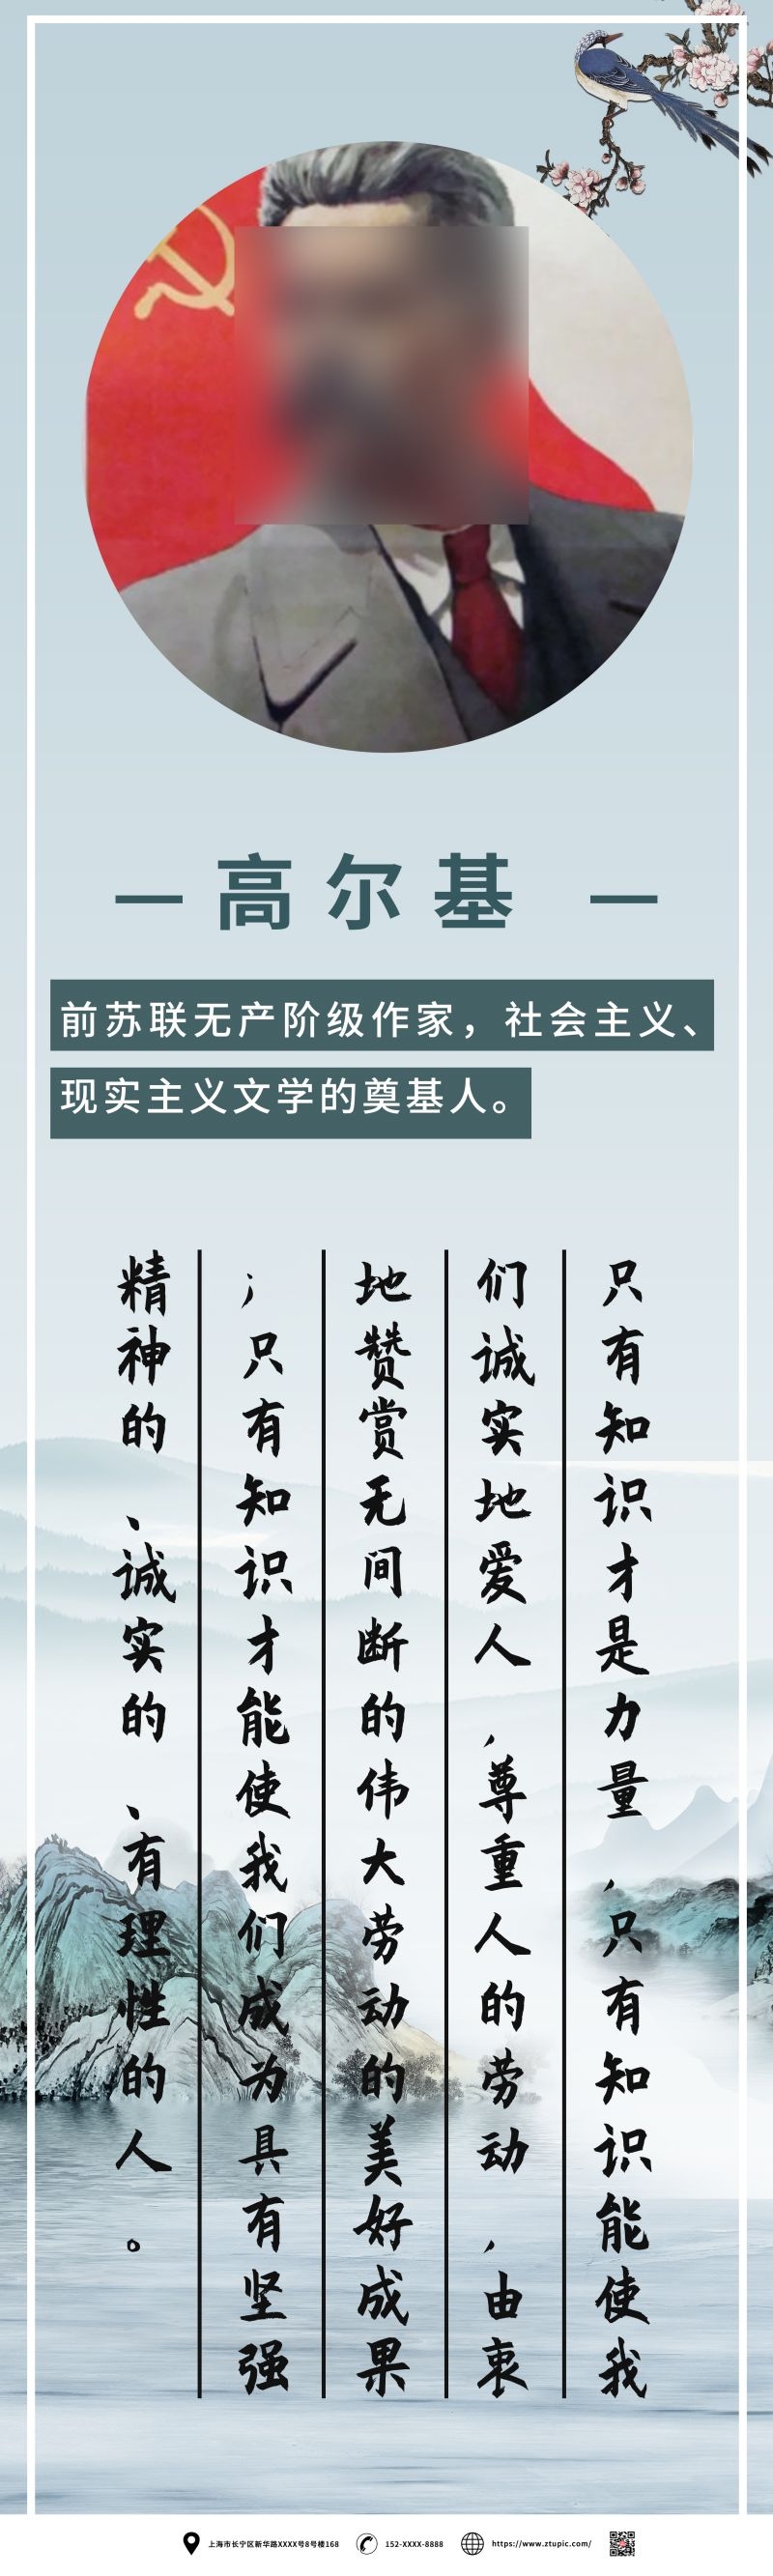 中国风复古学校文化名人名言挂画海报 (81)